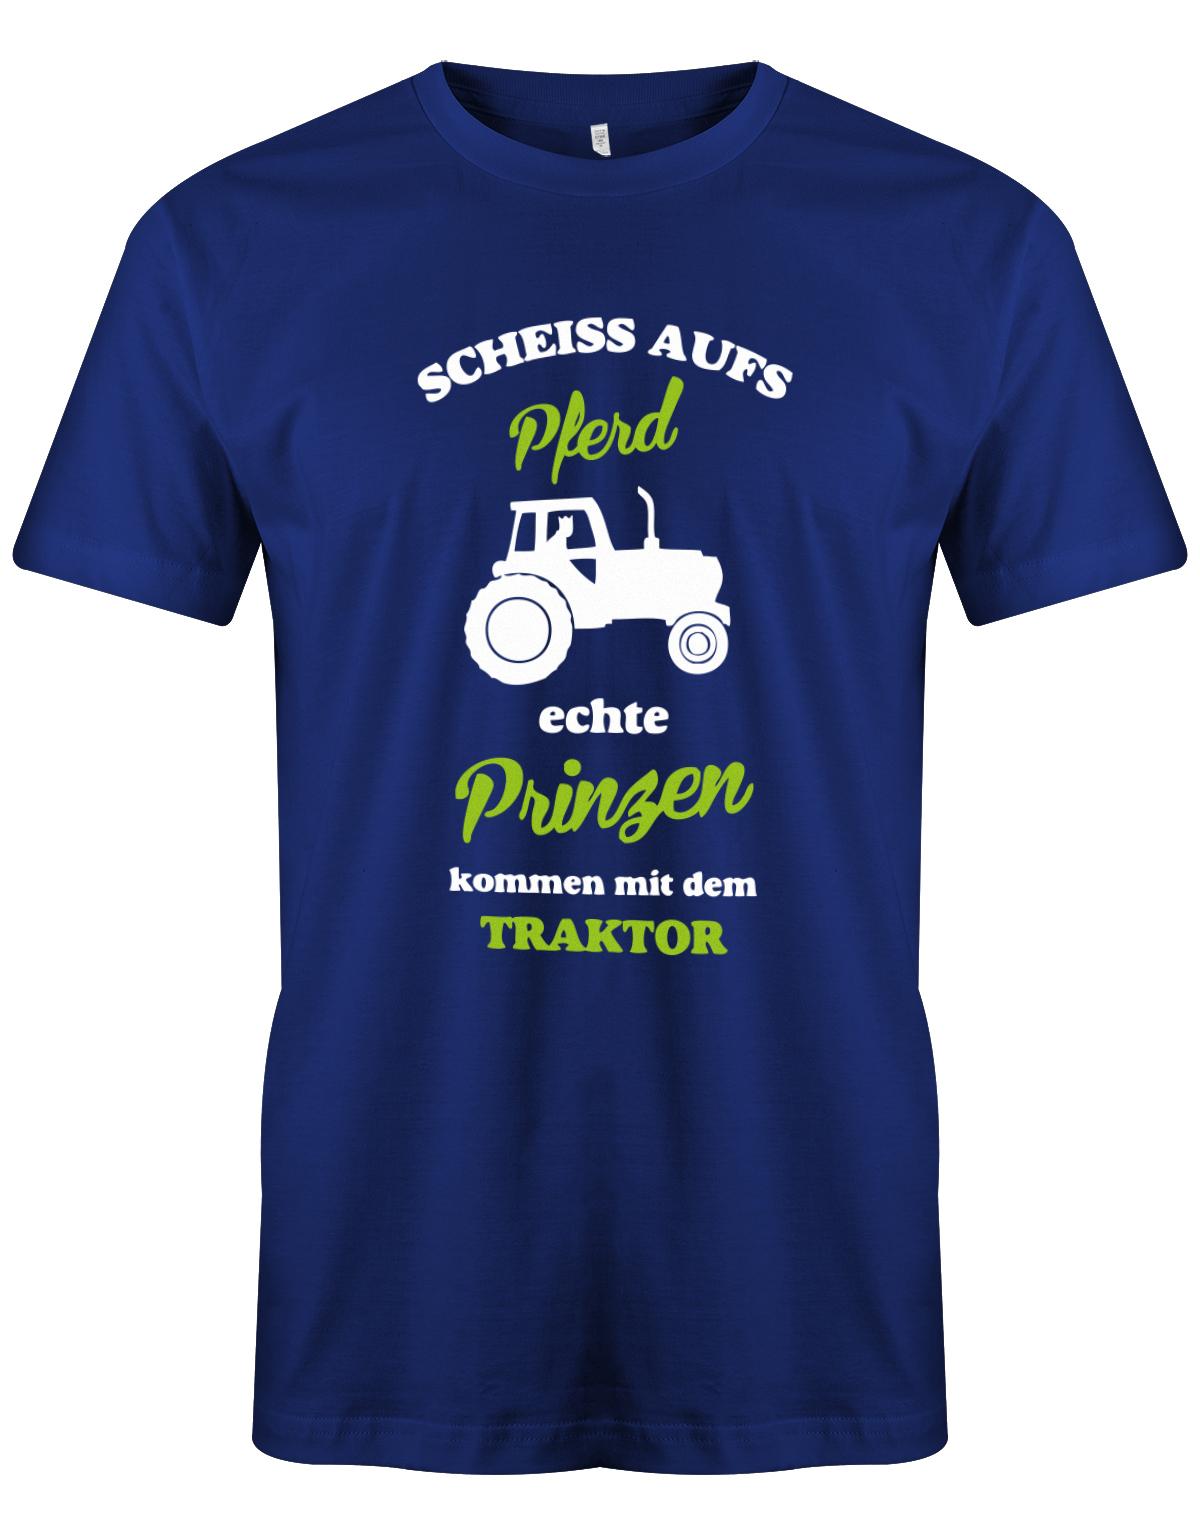 Landwirtschaft Shirt Männer - Scheiss aufs Pferd, echte Prinzen kommen mit dem Traktor.  Royalblauu